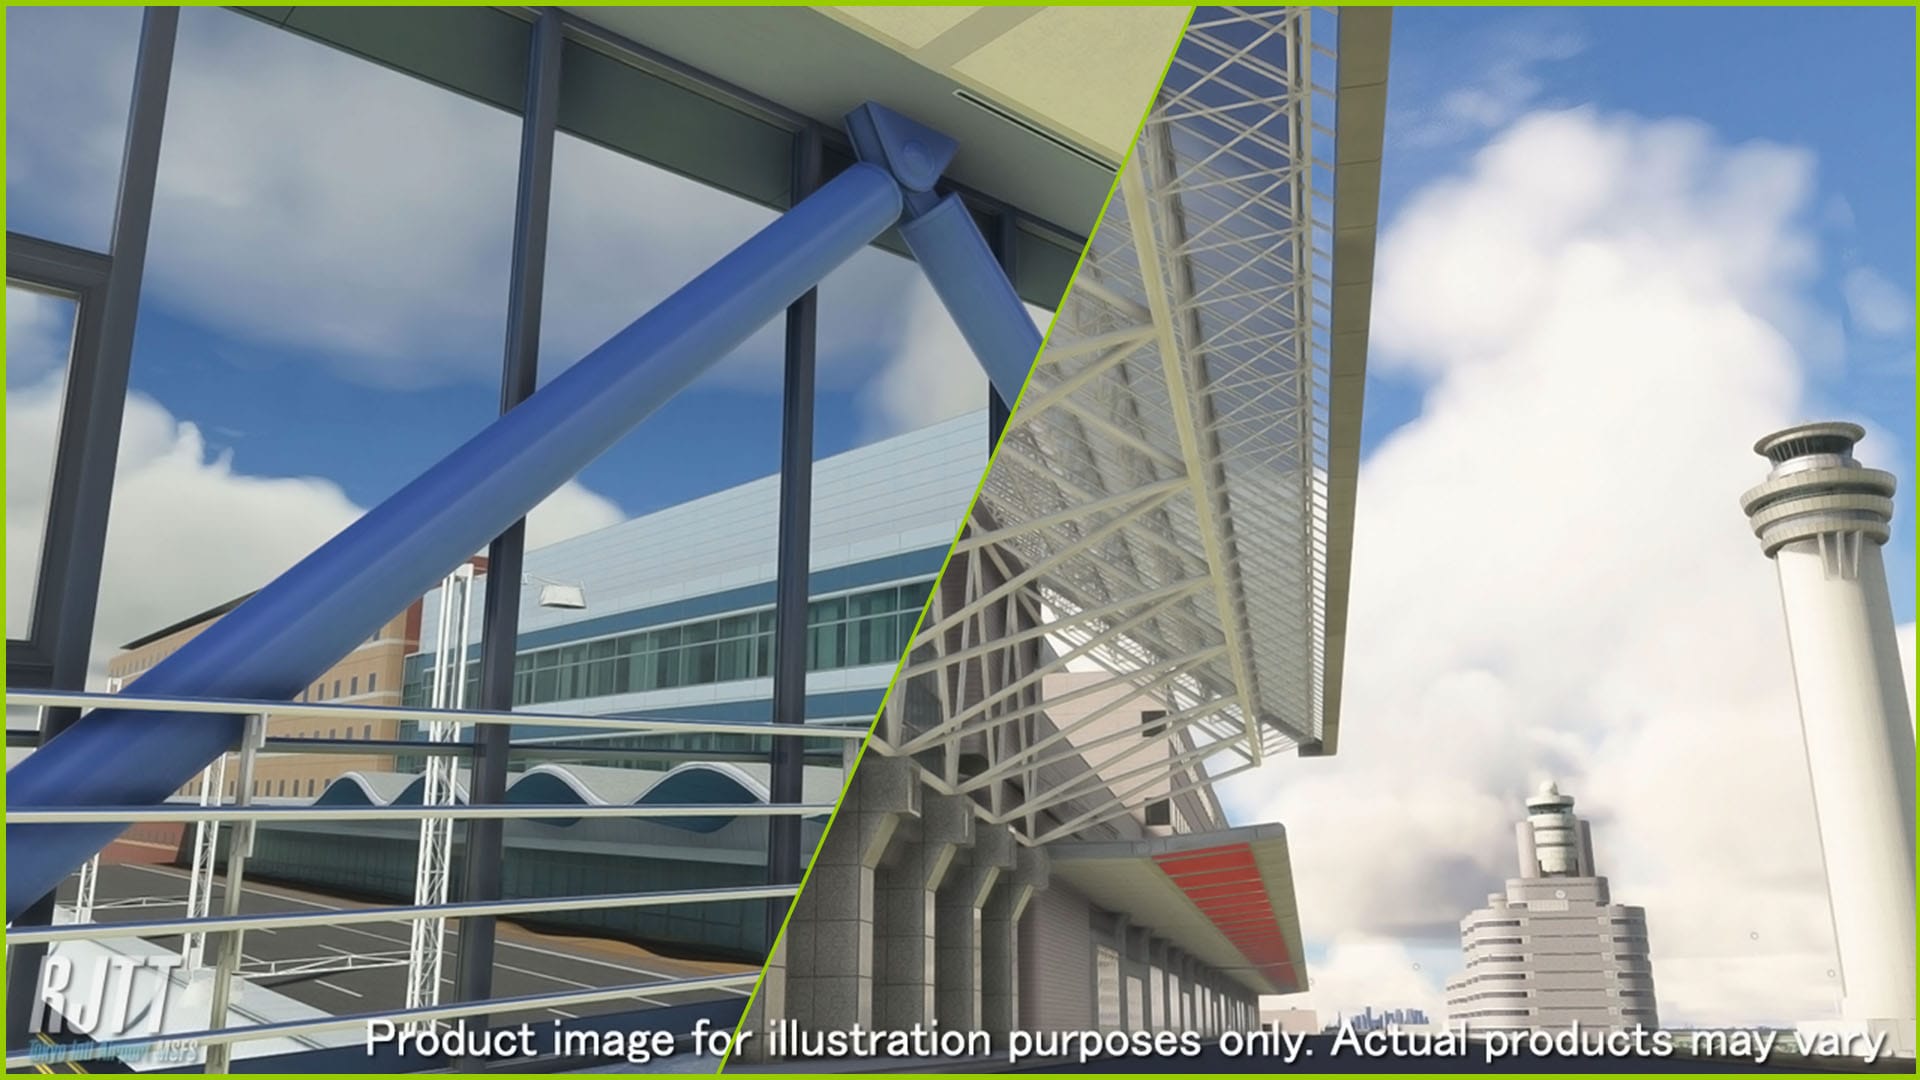 Microsoft Flight Simulator Tokyo Haneda Airport Showcased in New Screenshots